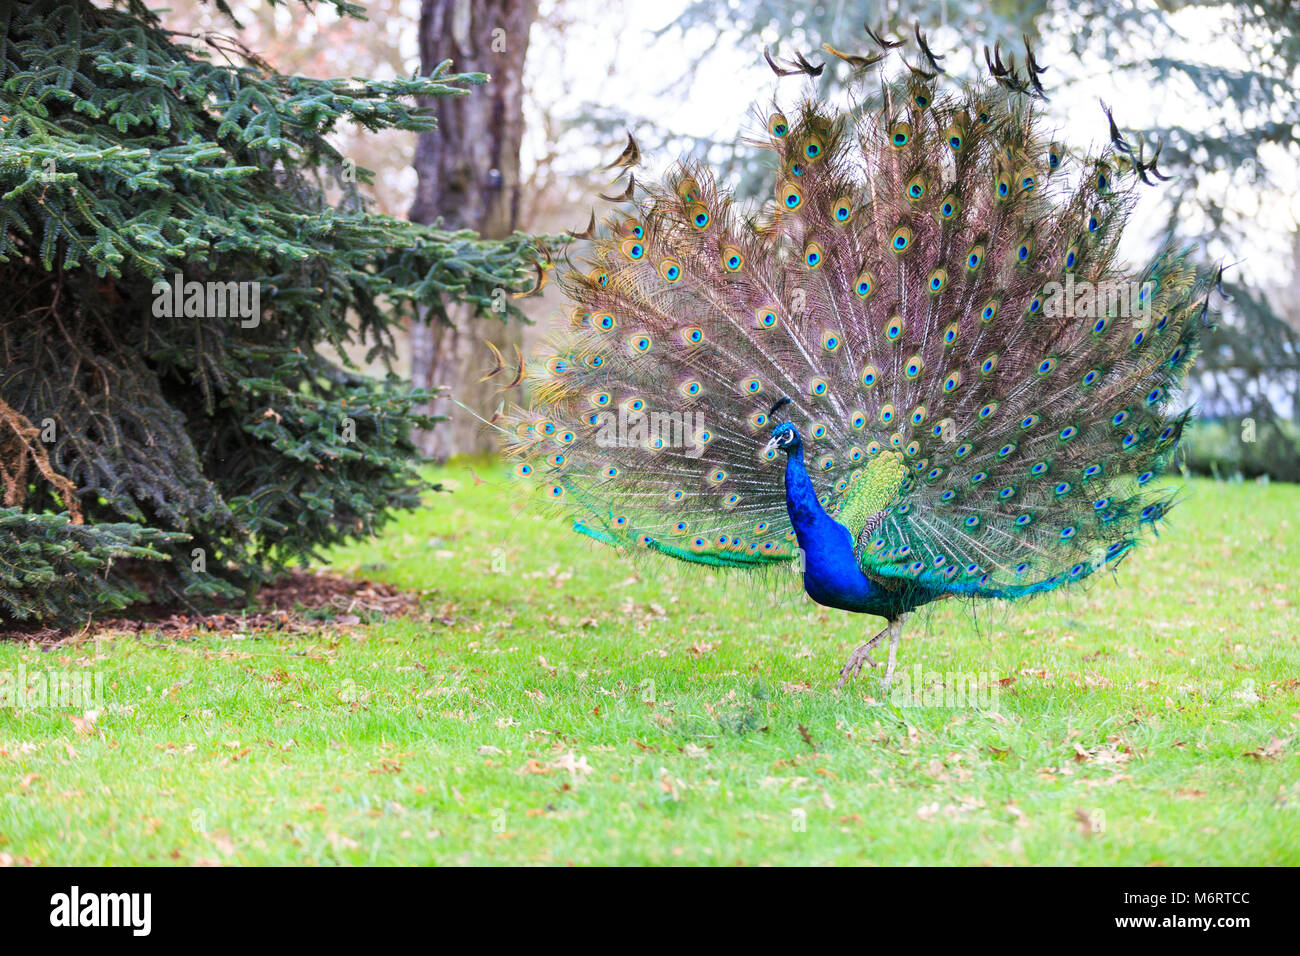 Peacock, männlichen Pfau () seine Flügel ausbreitet und die Öffnung ihrer Federn für eine vollständige feather Anzeige in Parkland Stockfoto